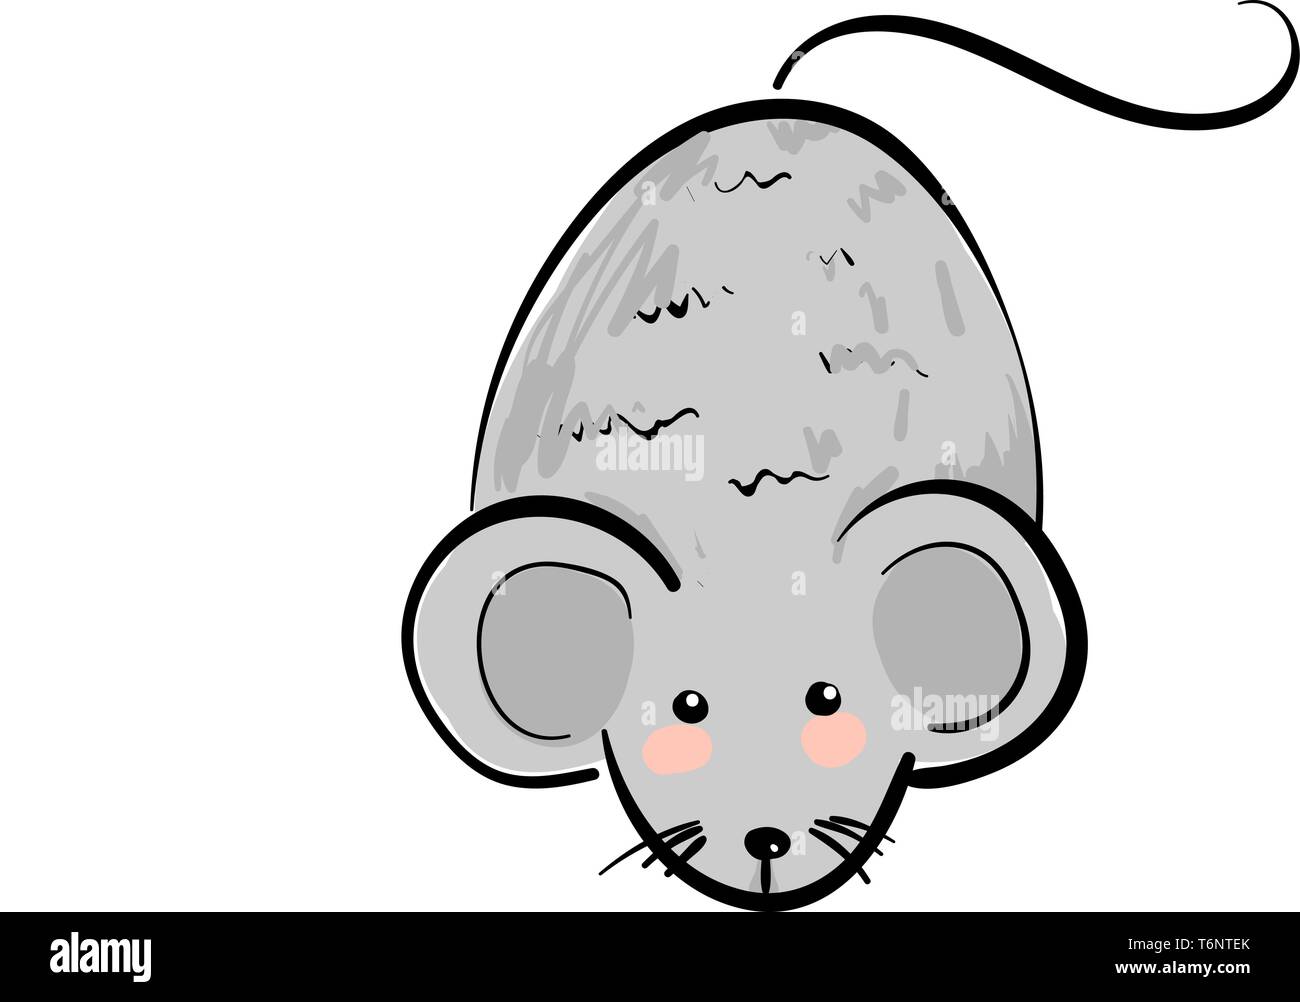 Cartoon cute little gris souris avec un gros corps de forme ovale, d'un museau pointu et des yeux oreilles relativement grandes moustaches noires et une longue queue ressemble hap Illustration de Vecteur